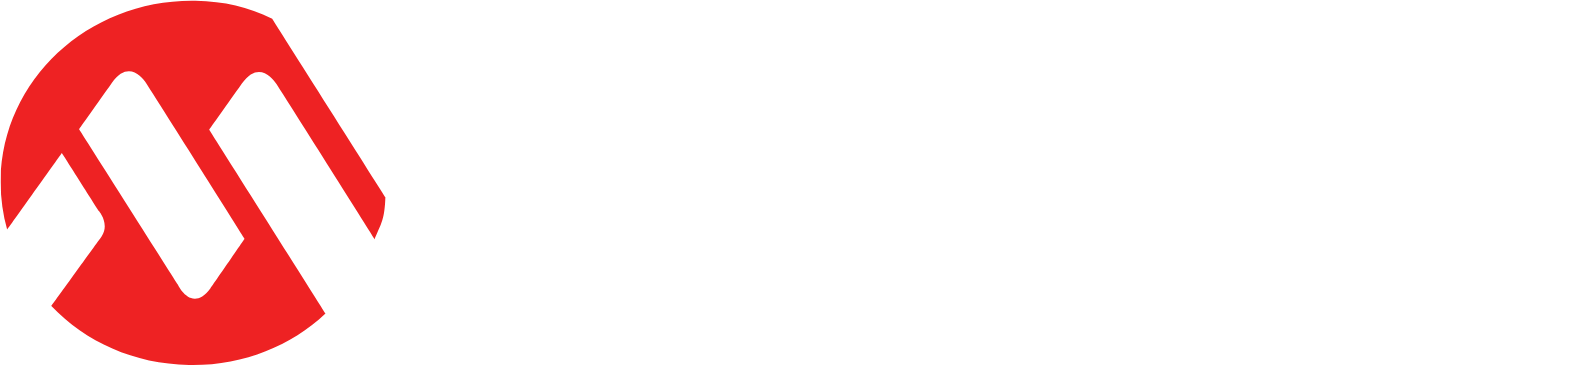 Microchip Technology logo grand pour les fonds sombres (PNG transparent)